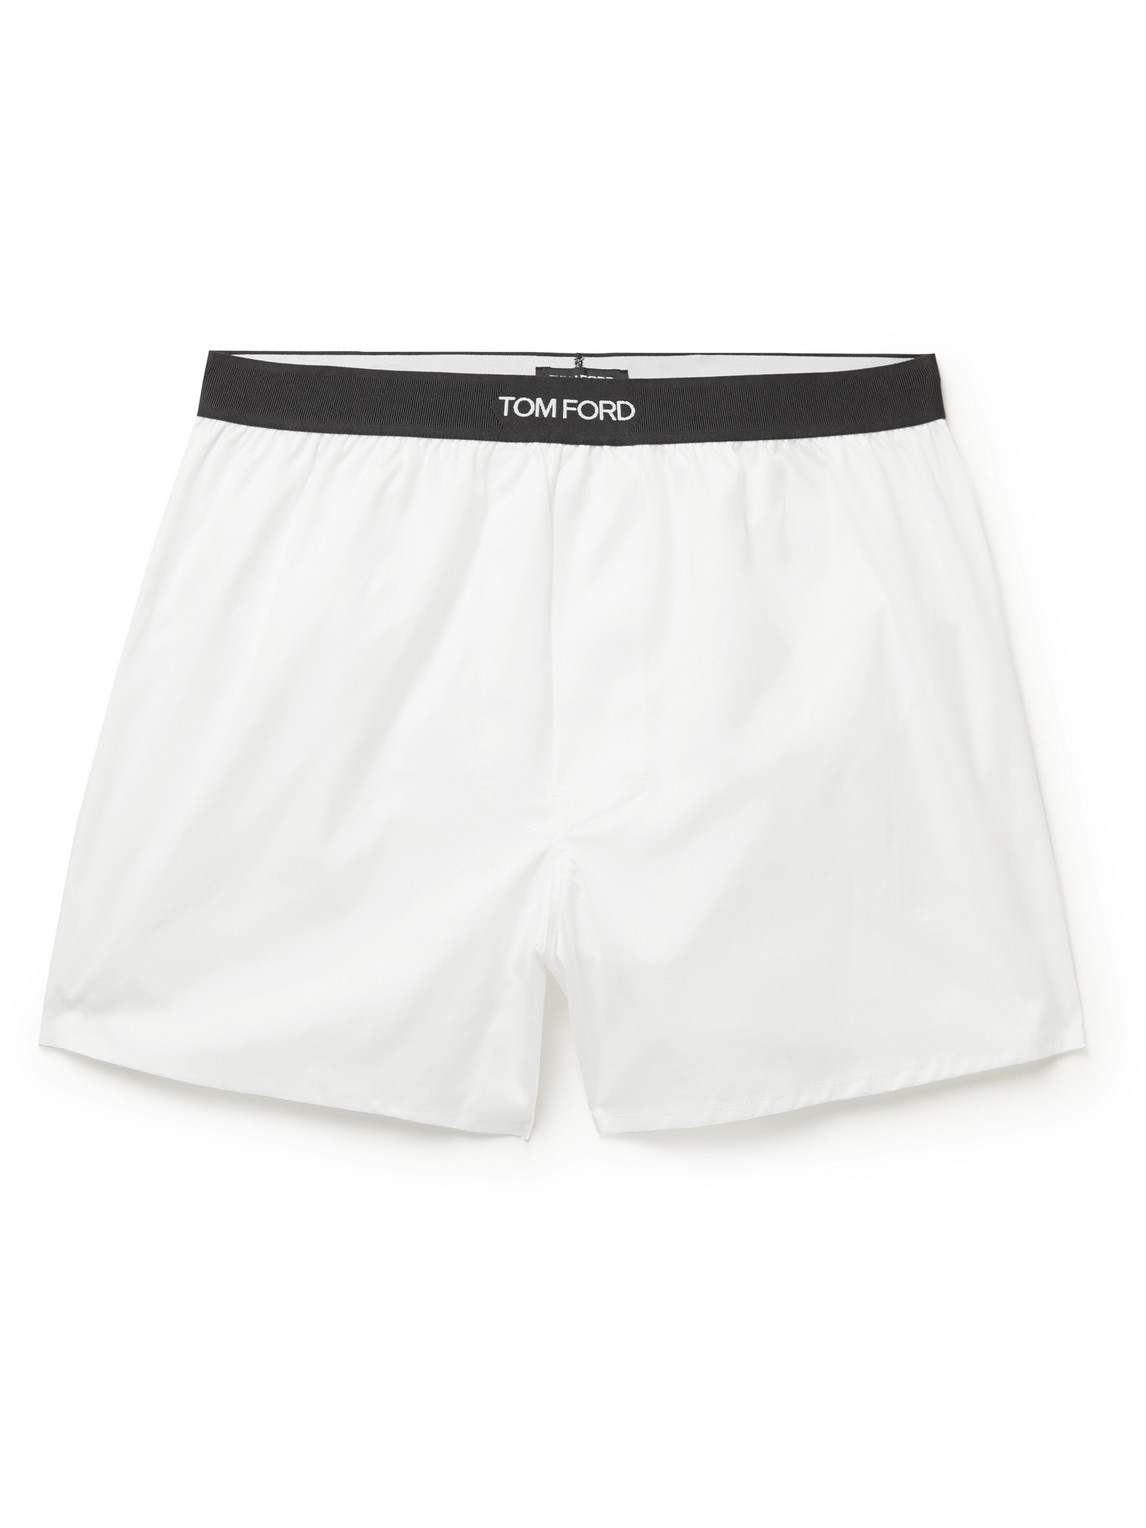 TOM FORD - Cotton Boxer Shorts - Men - White - L von TOM FORD